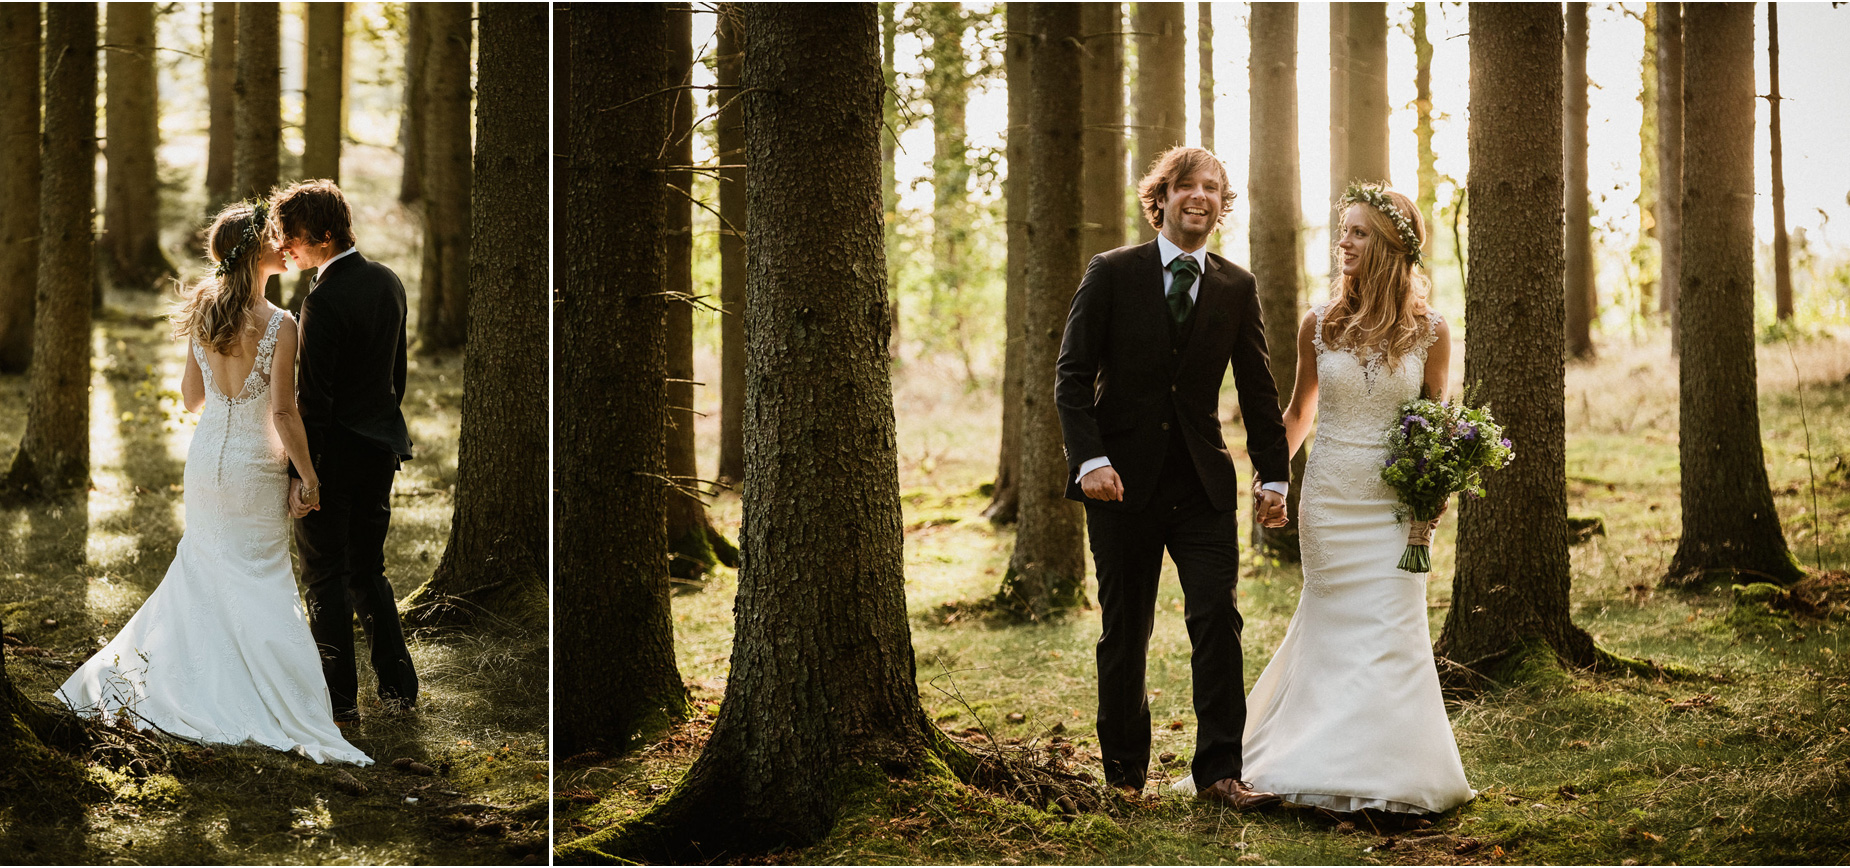 Bröllopsfotograf Linköping och Östergötland - bröllopsfotografering i skogen